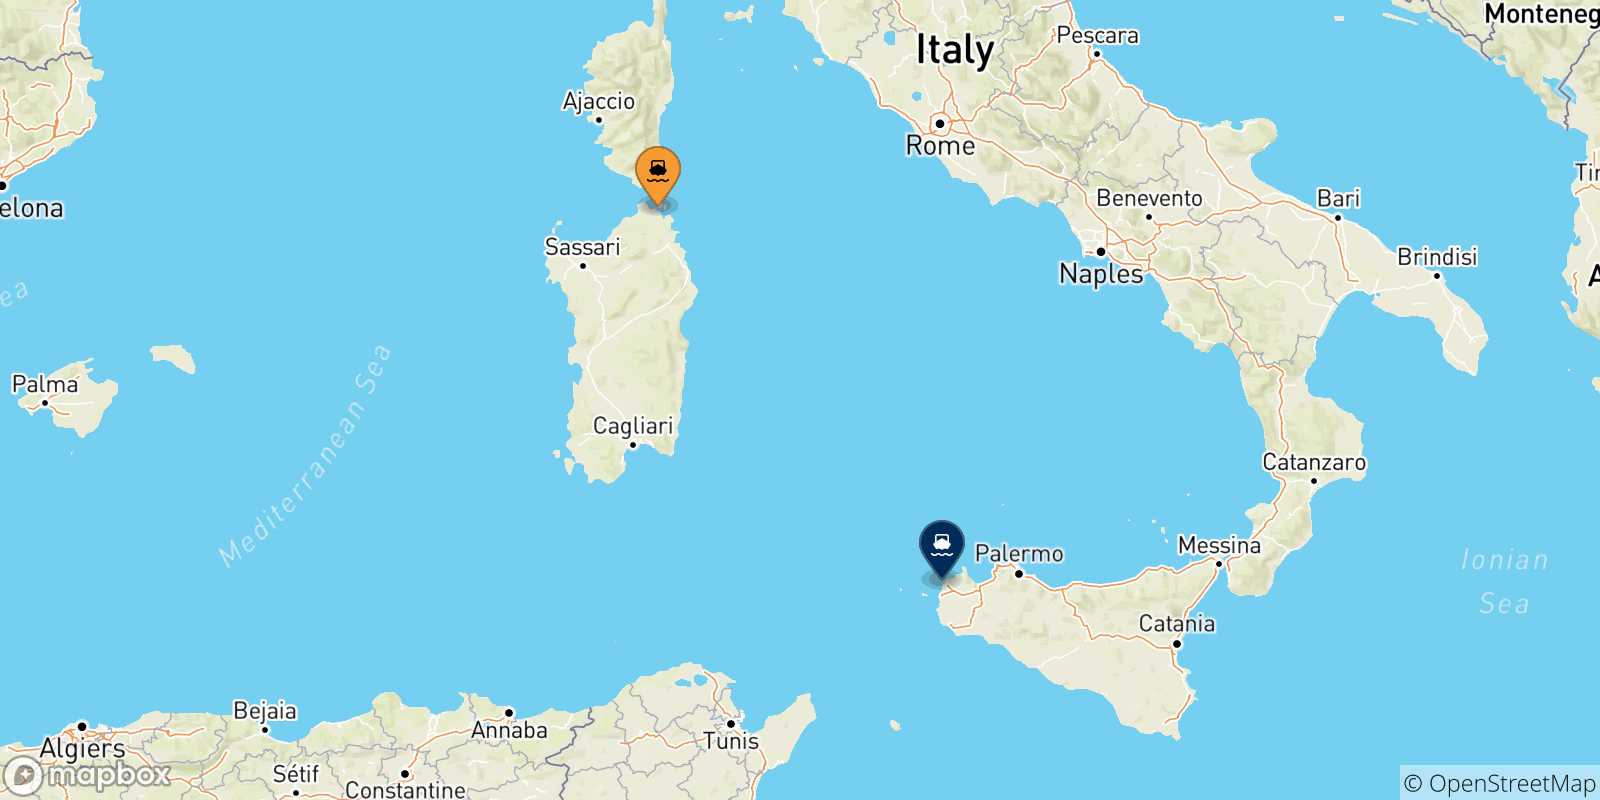 Mappa delle possibili rotte tra la Sardegna e Trapani